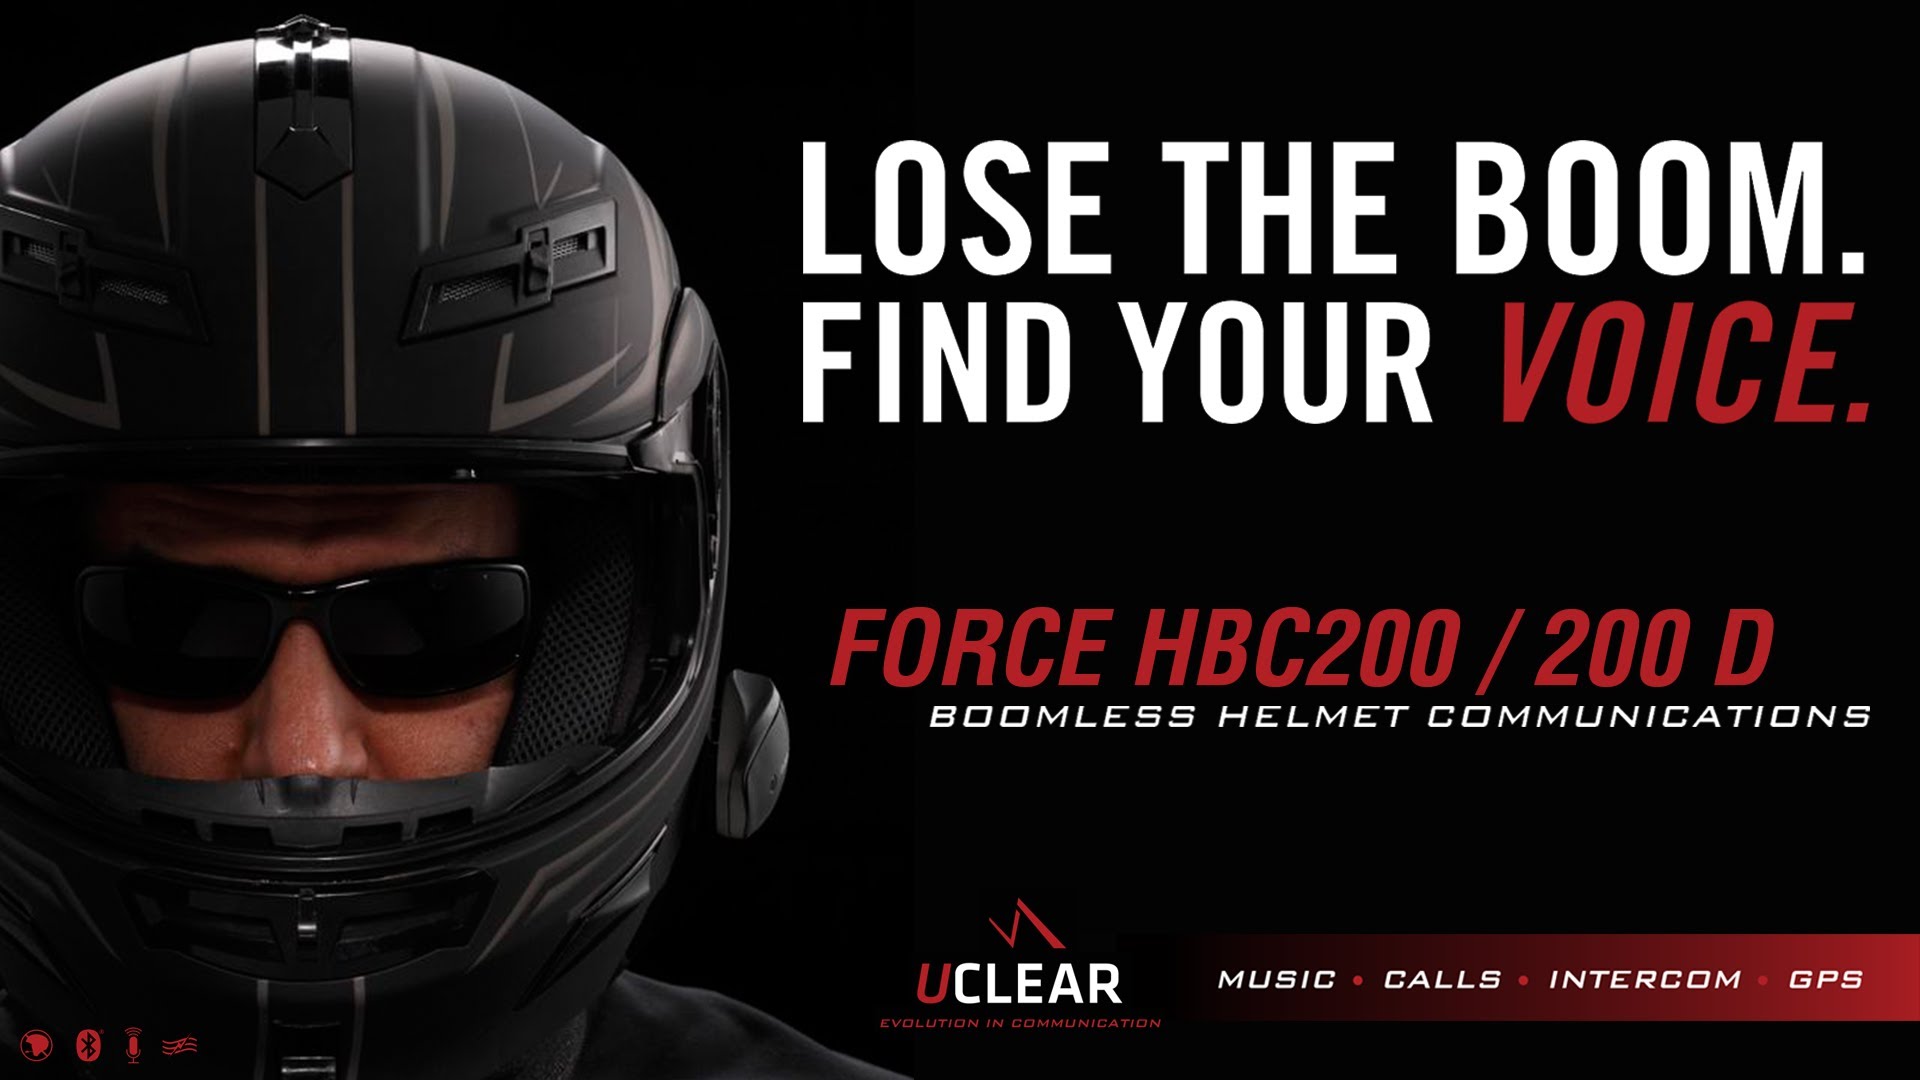 Force HBC200 / 200D